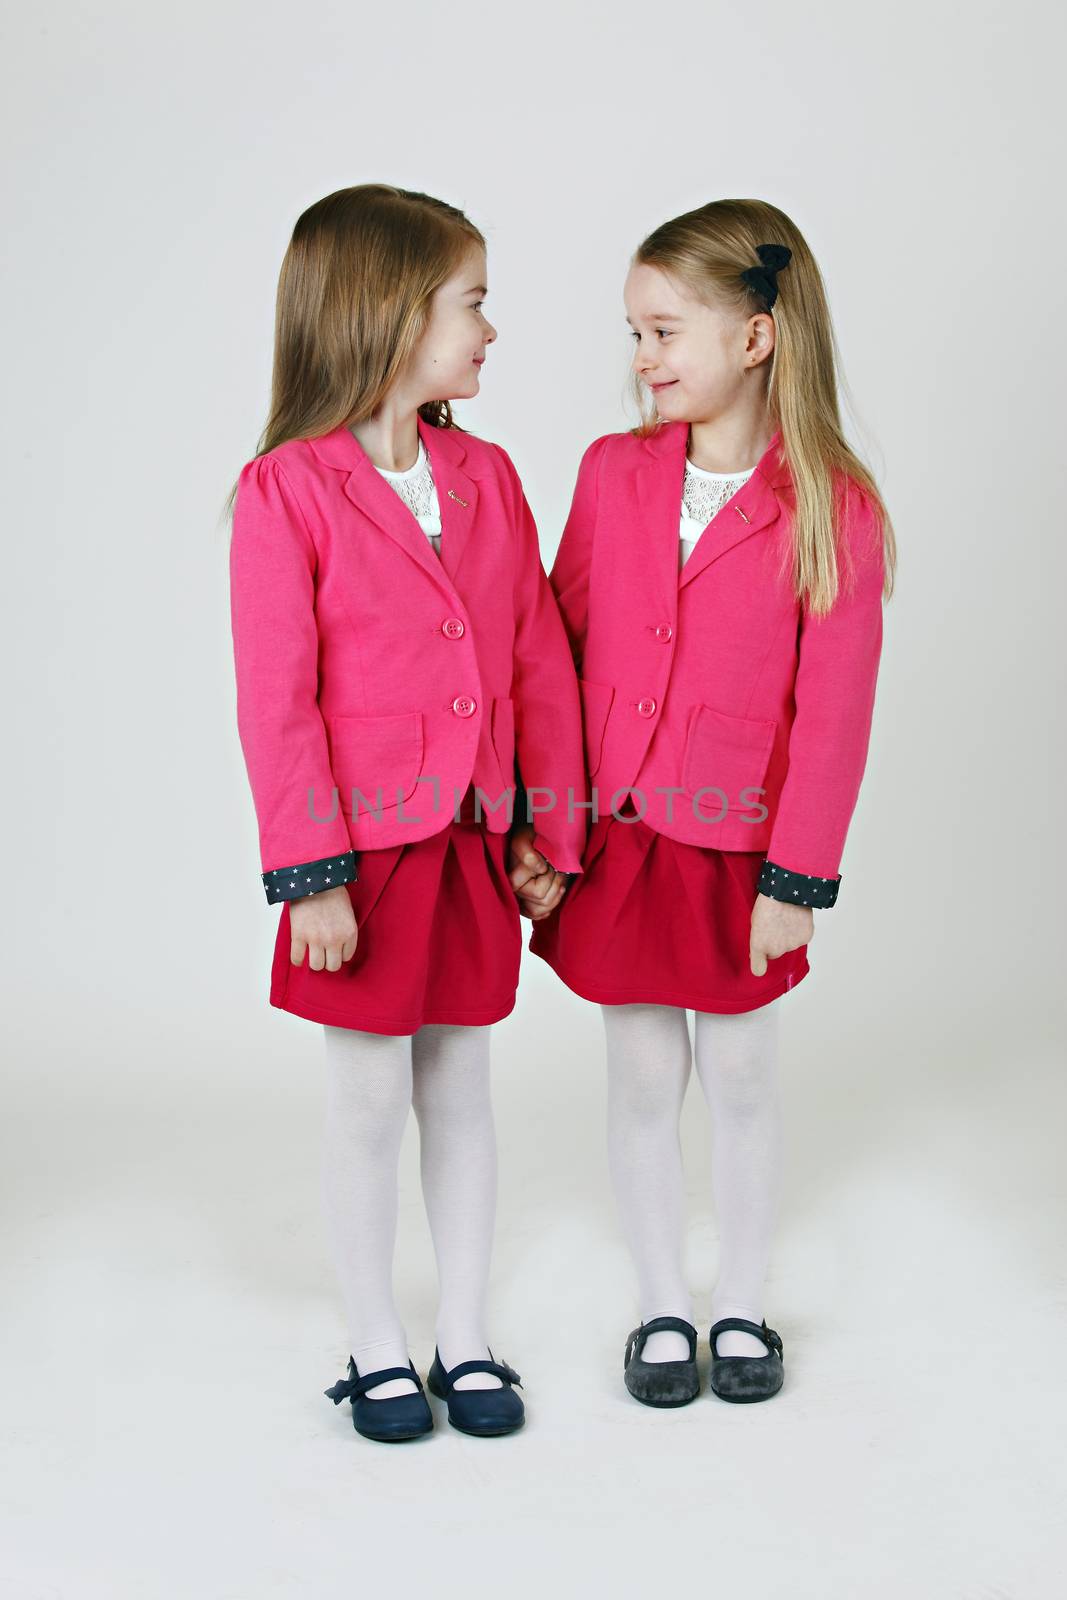 6 years old sisters by DigiArtFoto